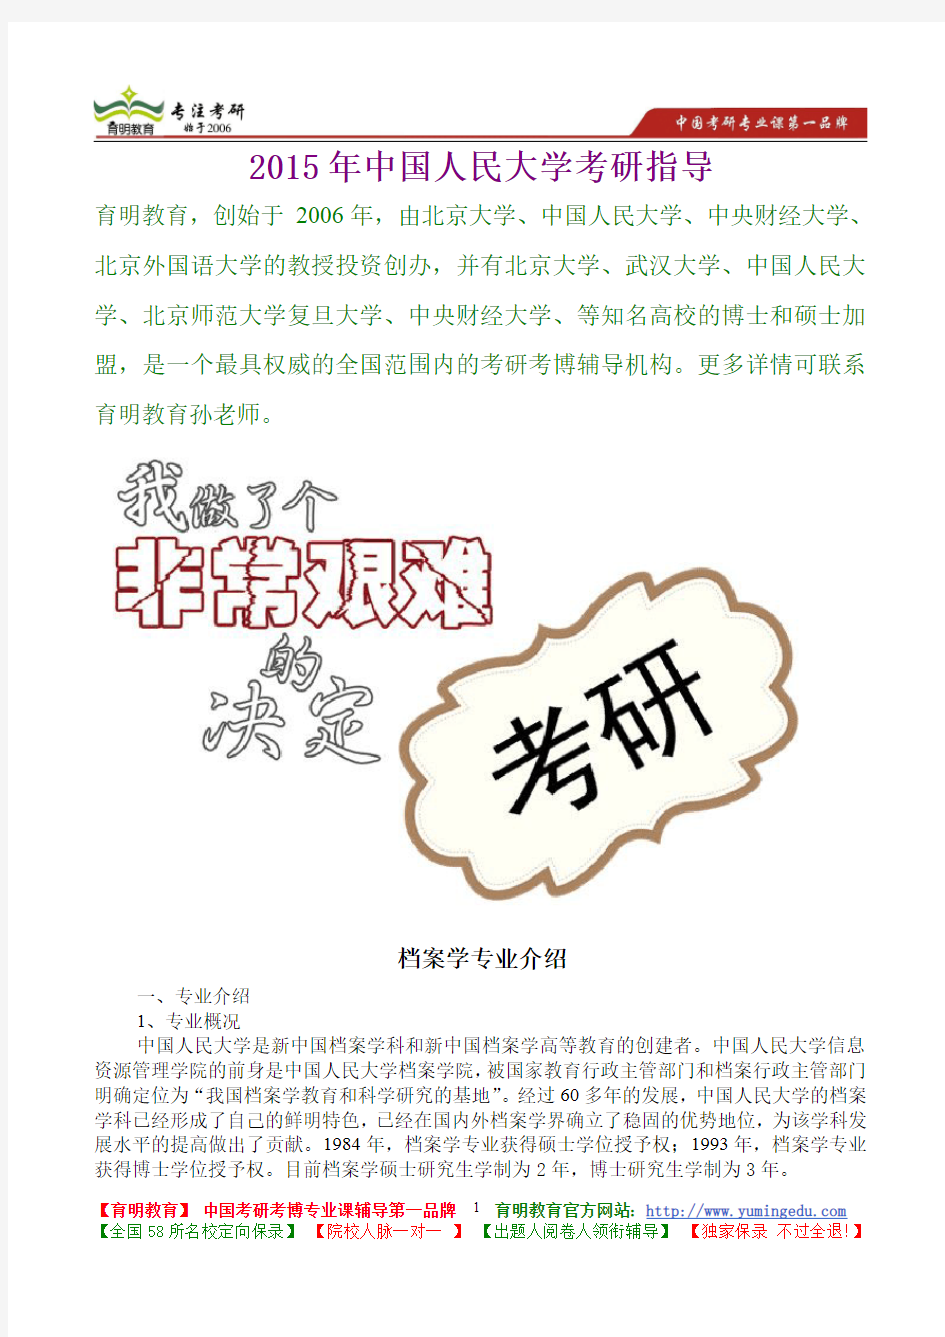 2015年中国人民大学档案学专业真题解析,考研真题,考研笔记,复试流程,考研经验